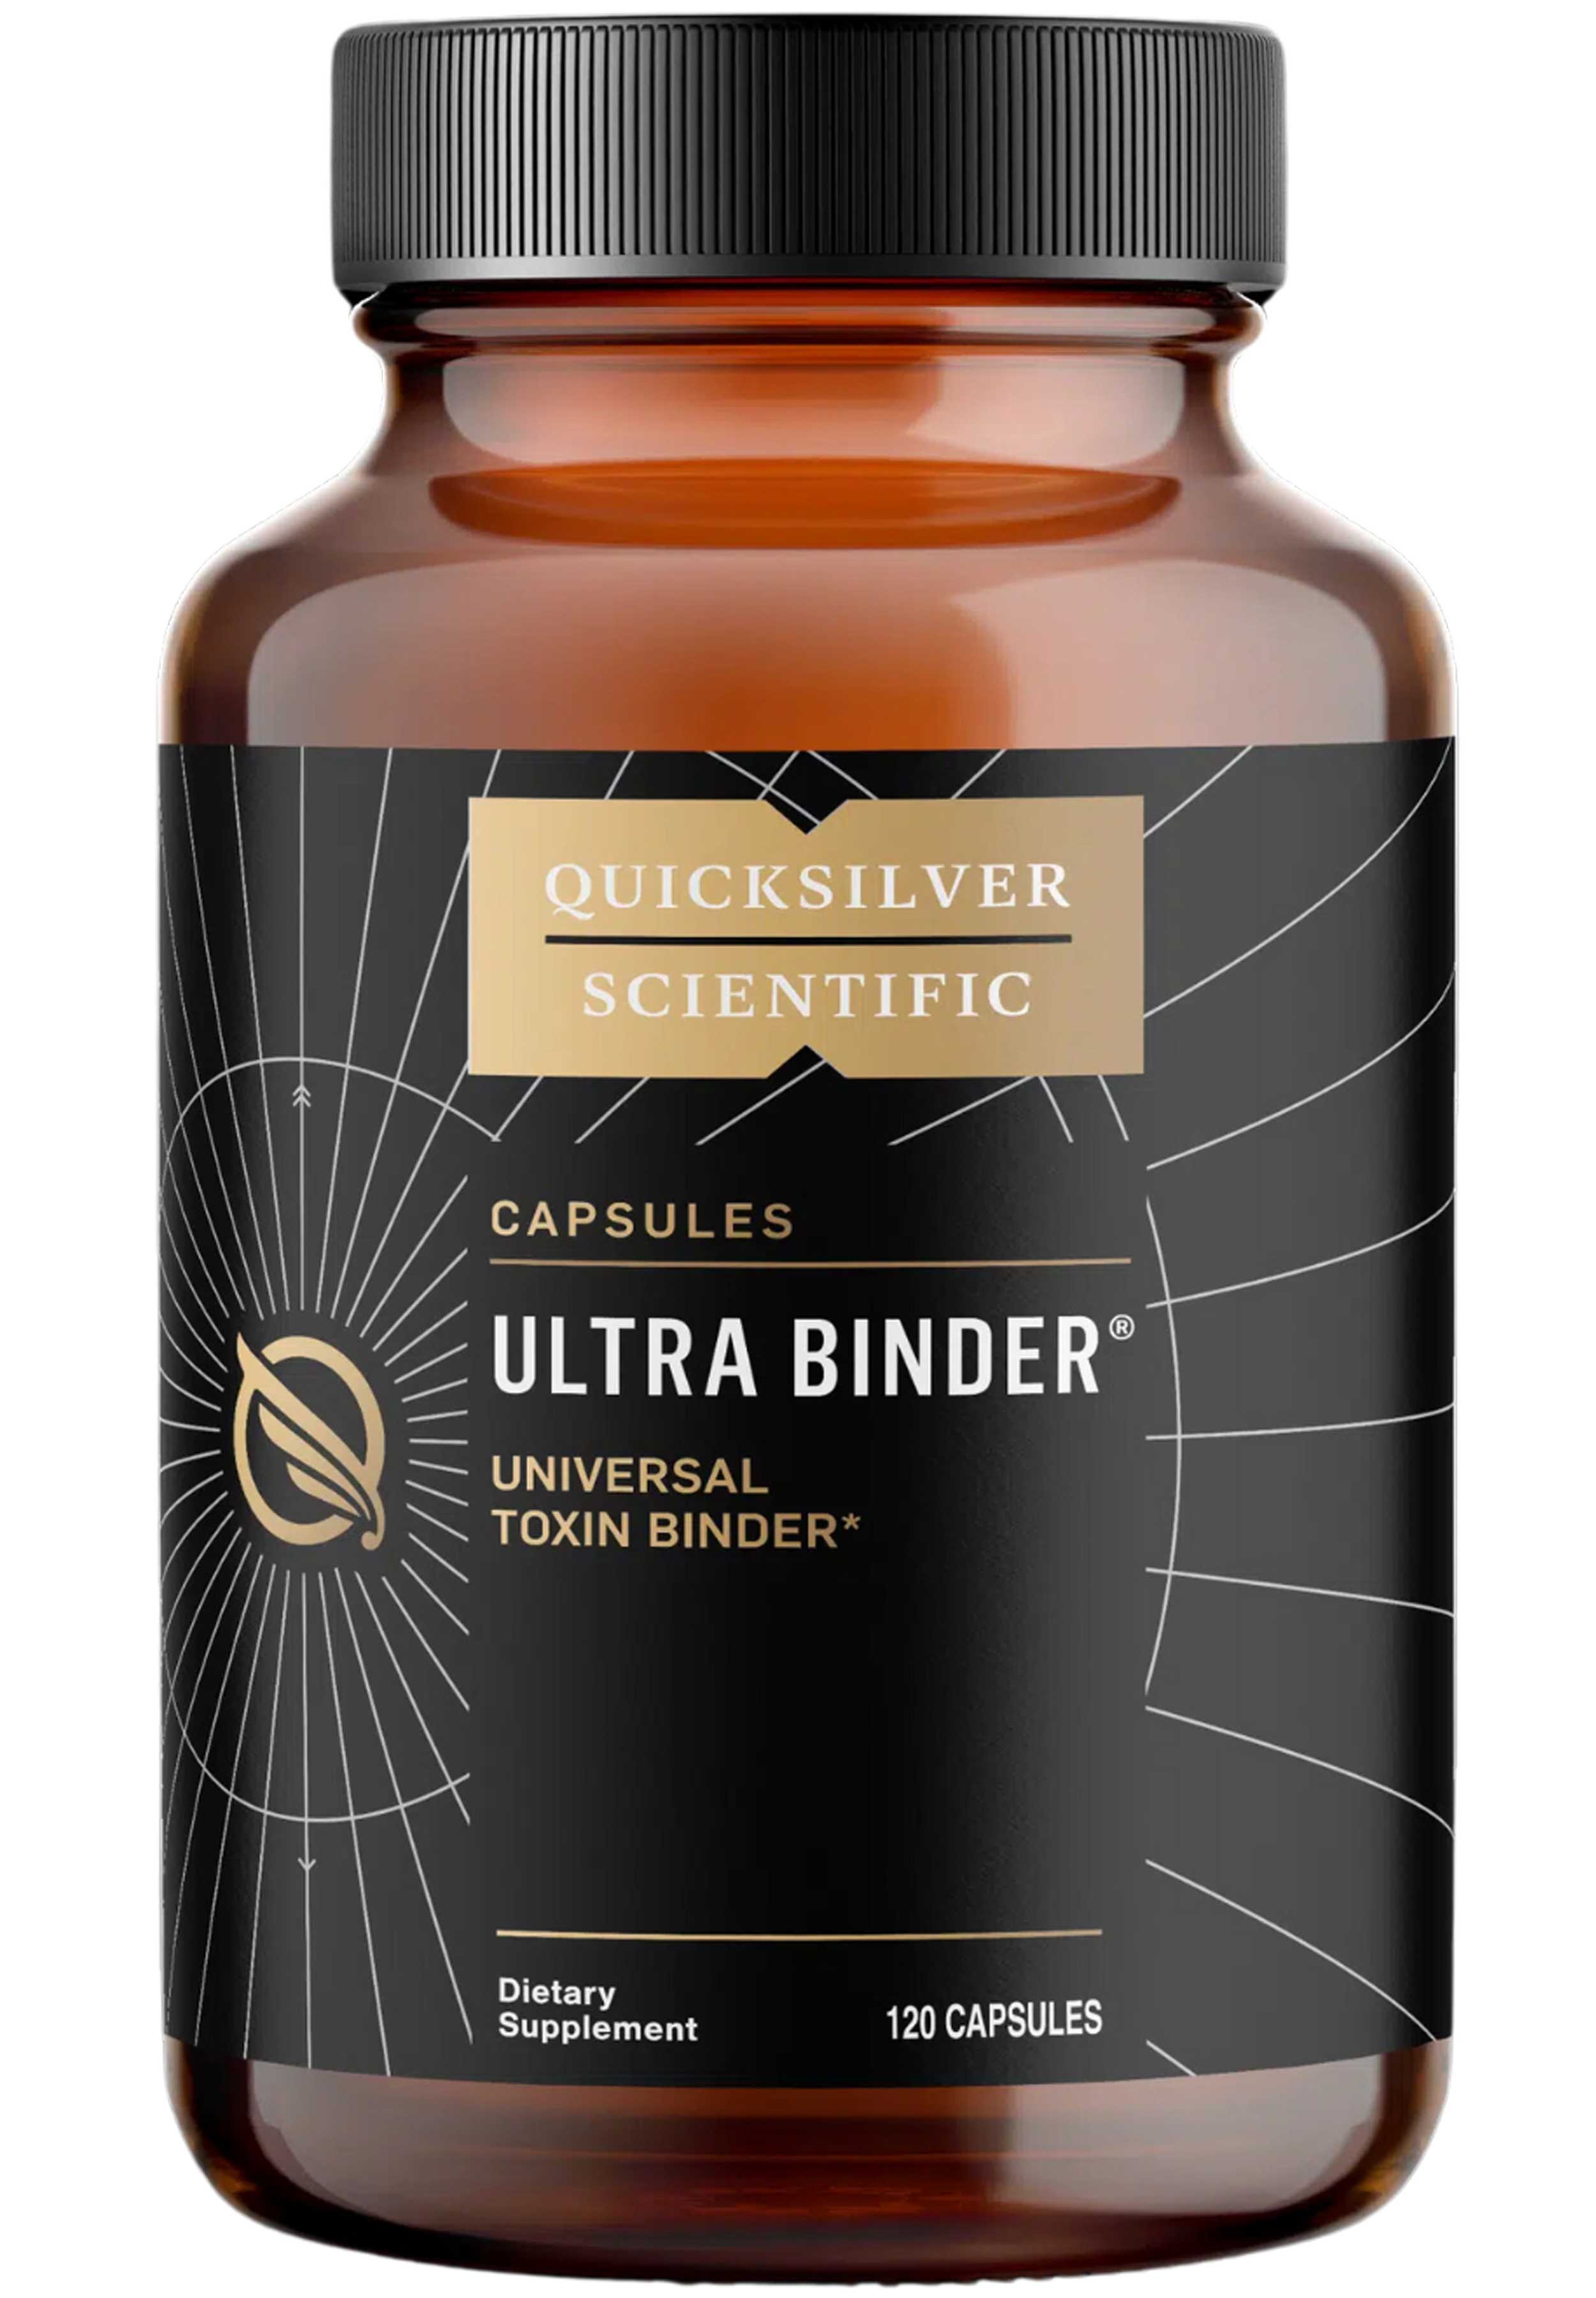 Quicksilver Scientific Ultra Binder Capsules